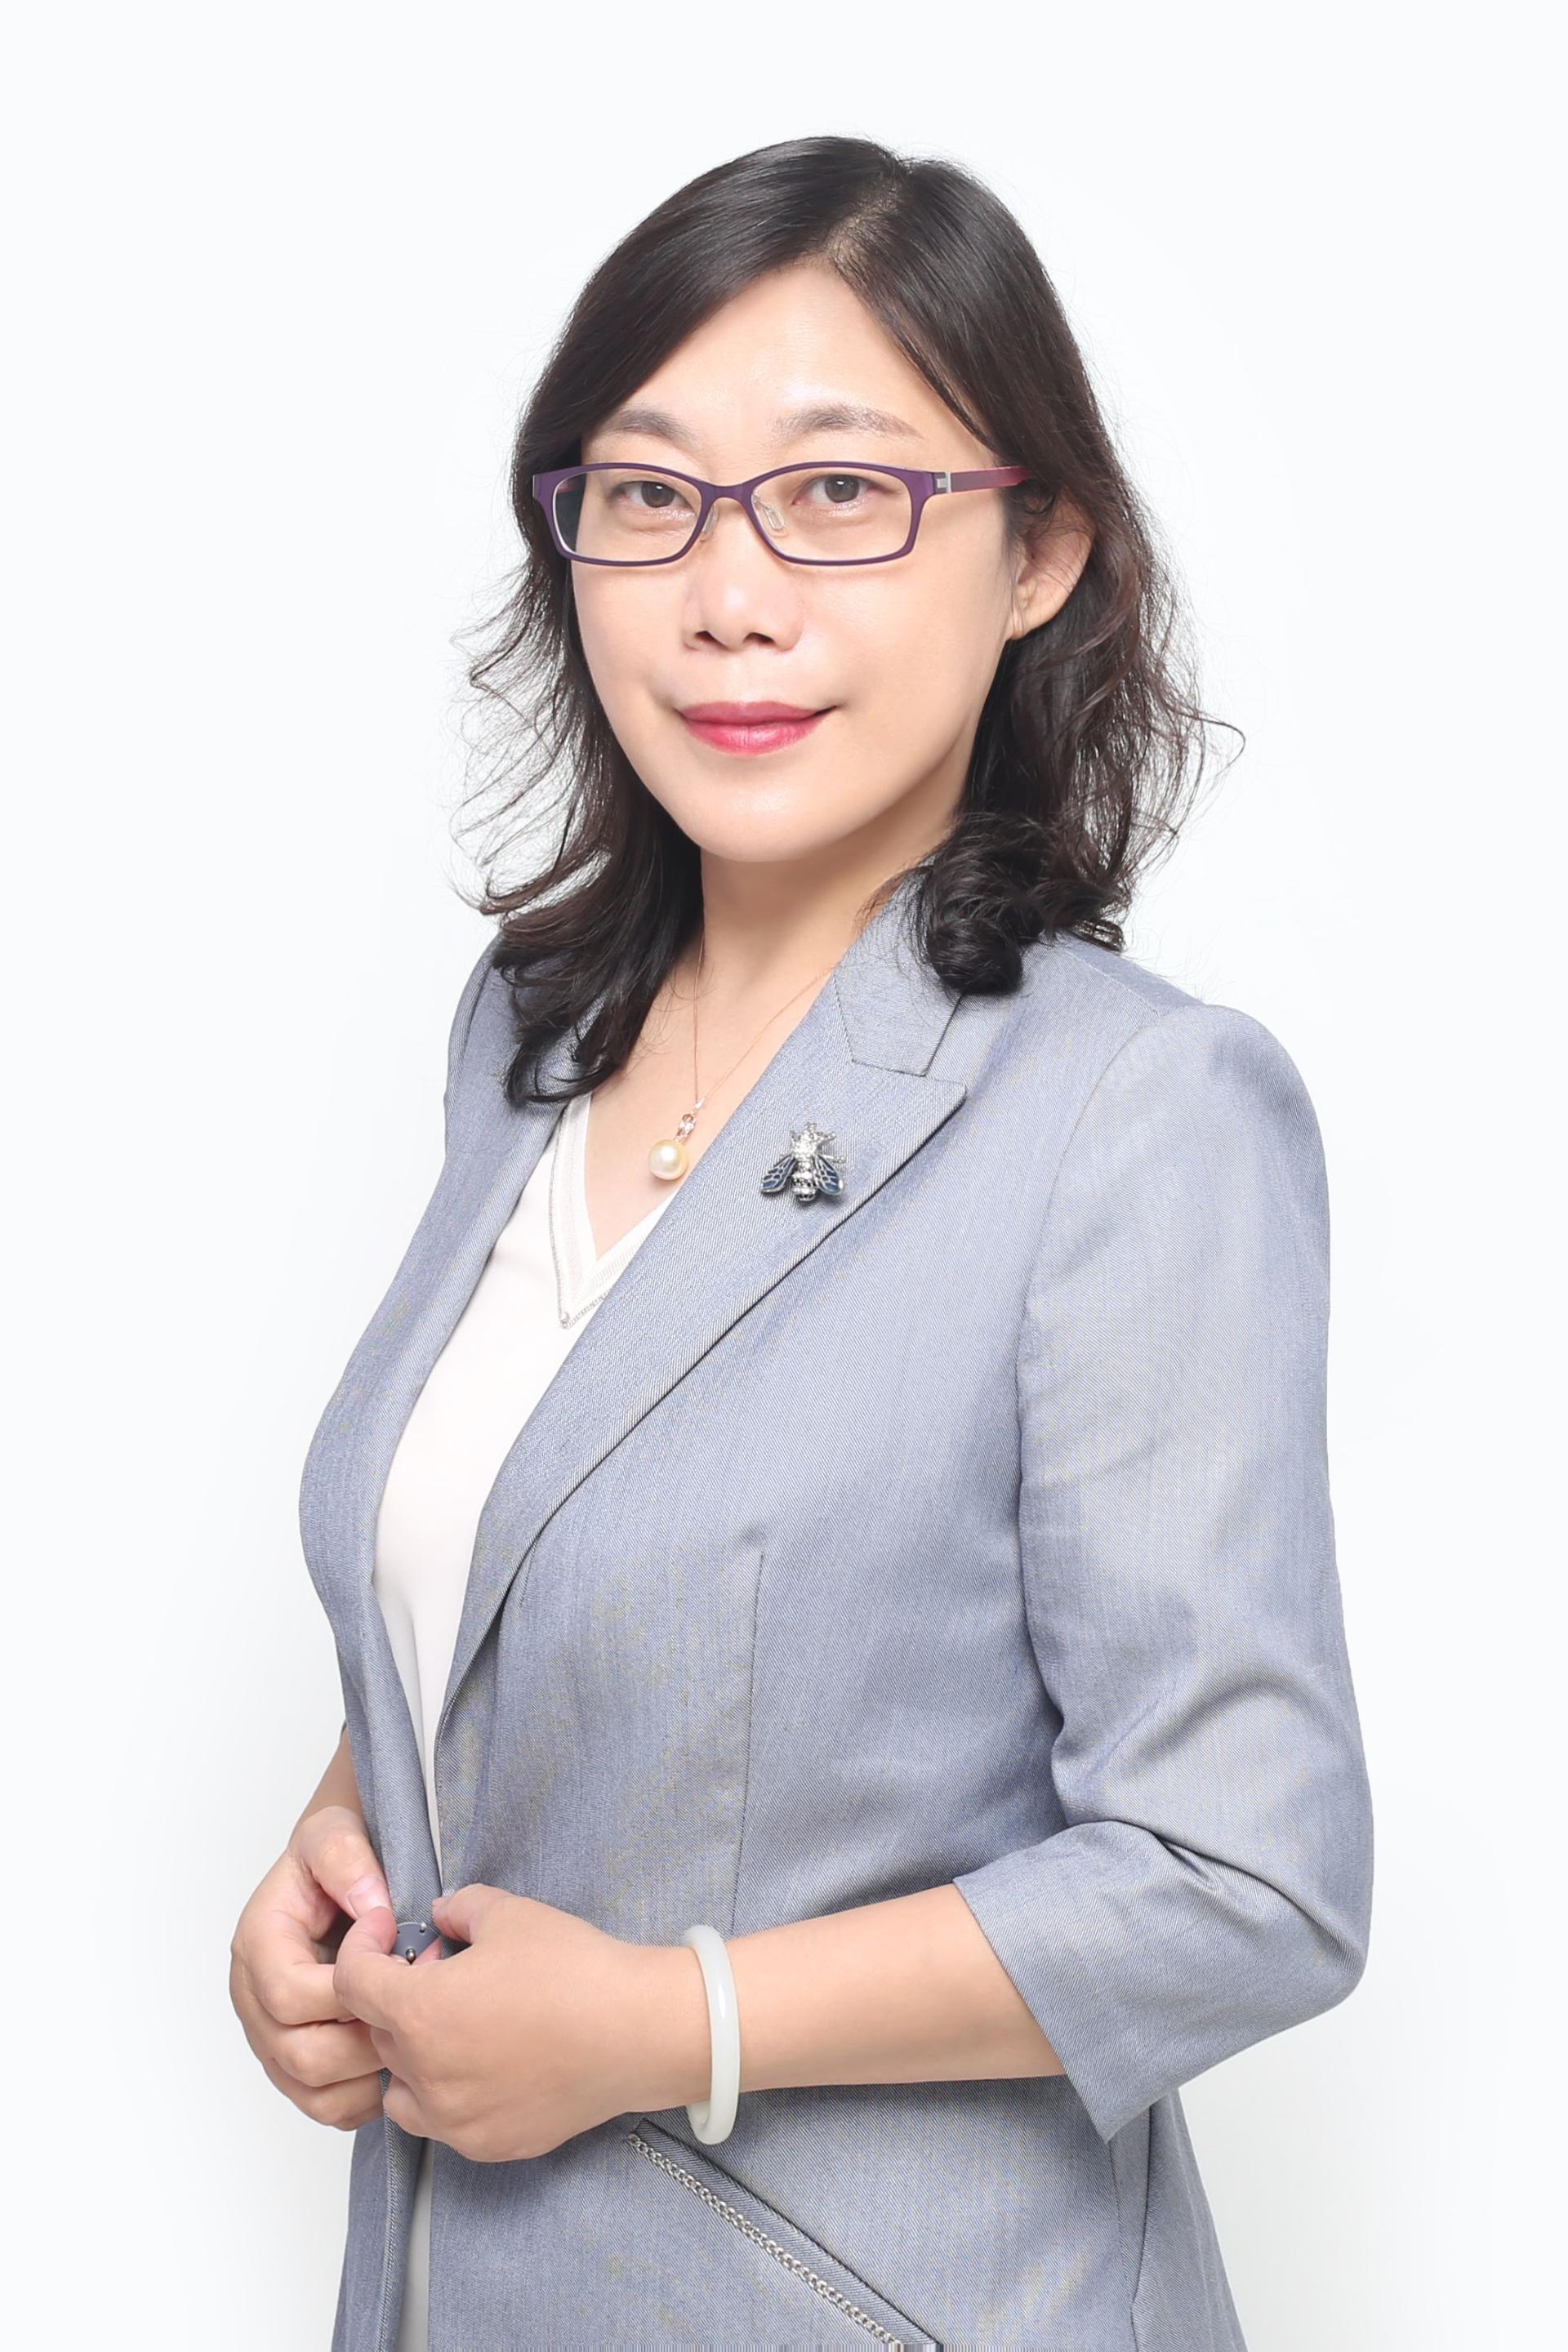 李晨 - Zewei Quan - 教师个人主页 - 南方科技大学